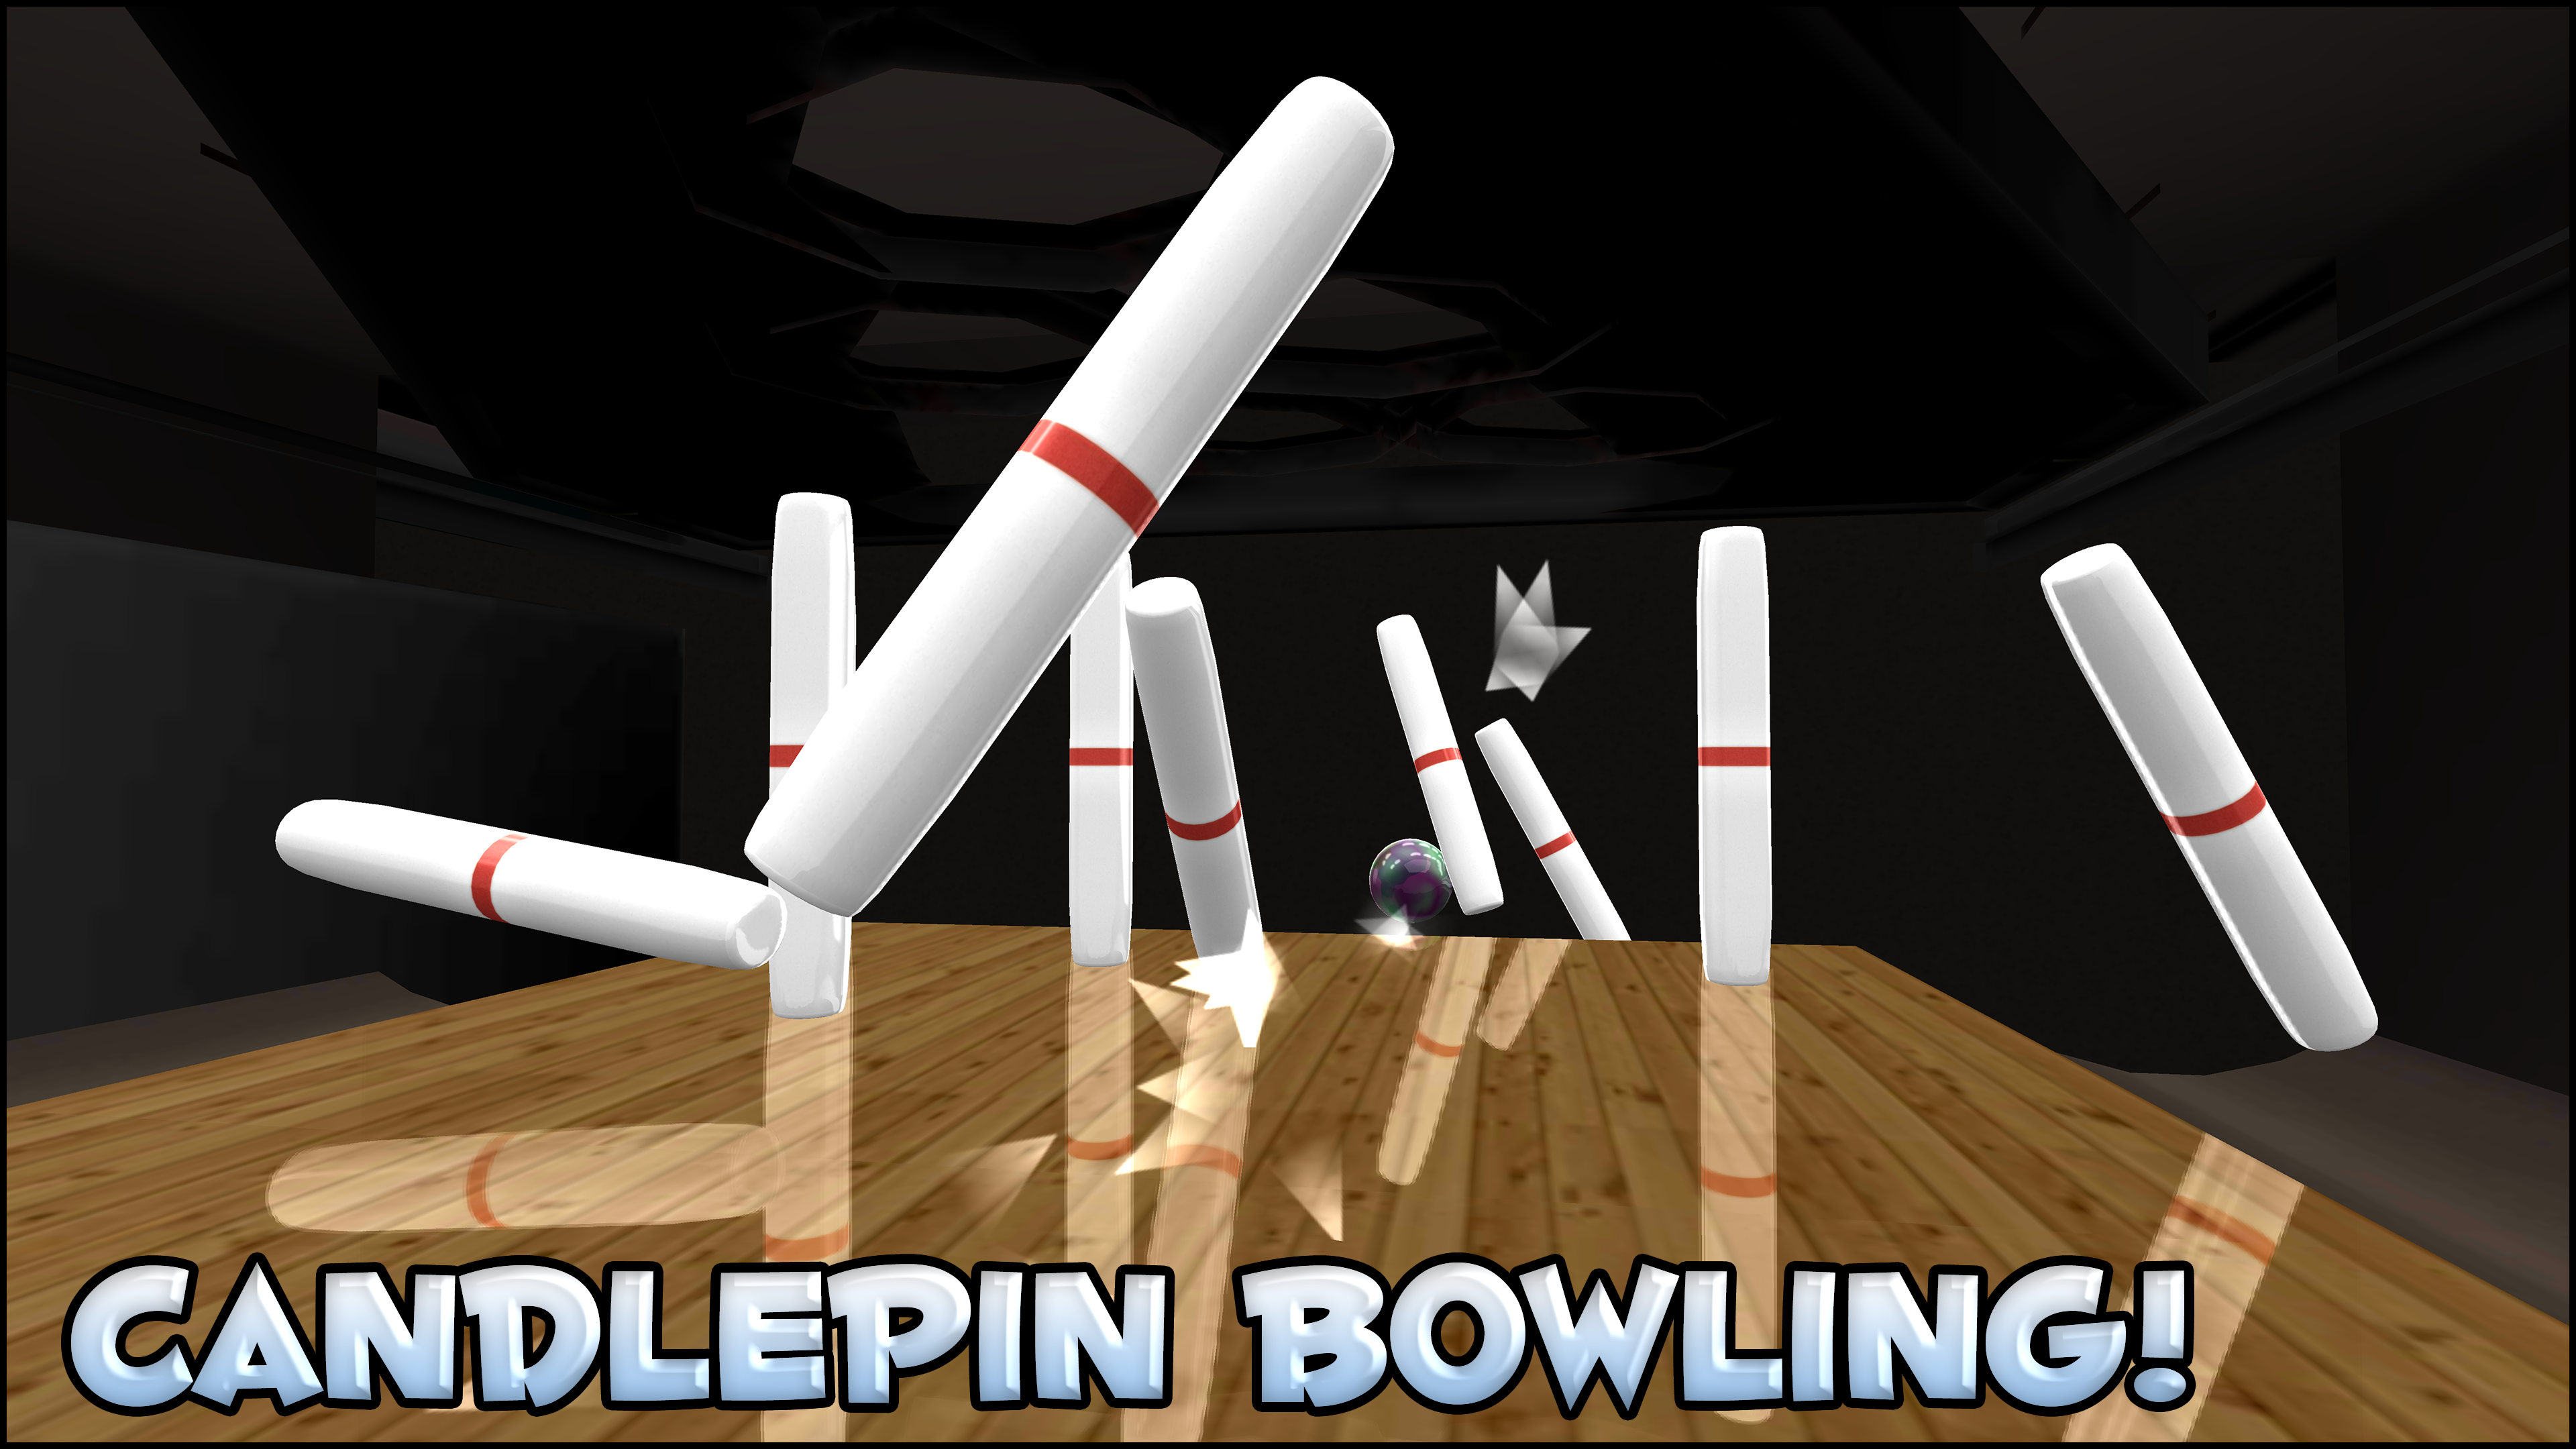 Screenshot of Galaxy Bowling 3D